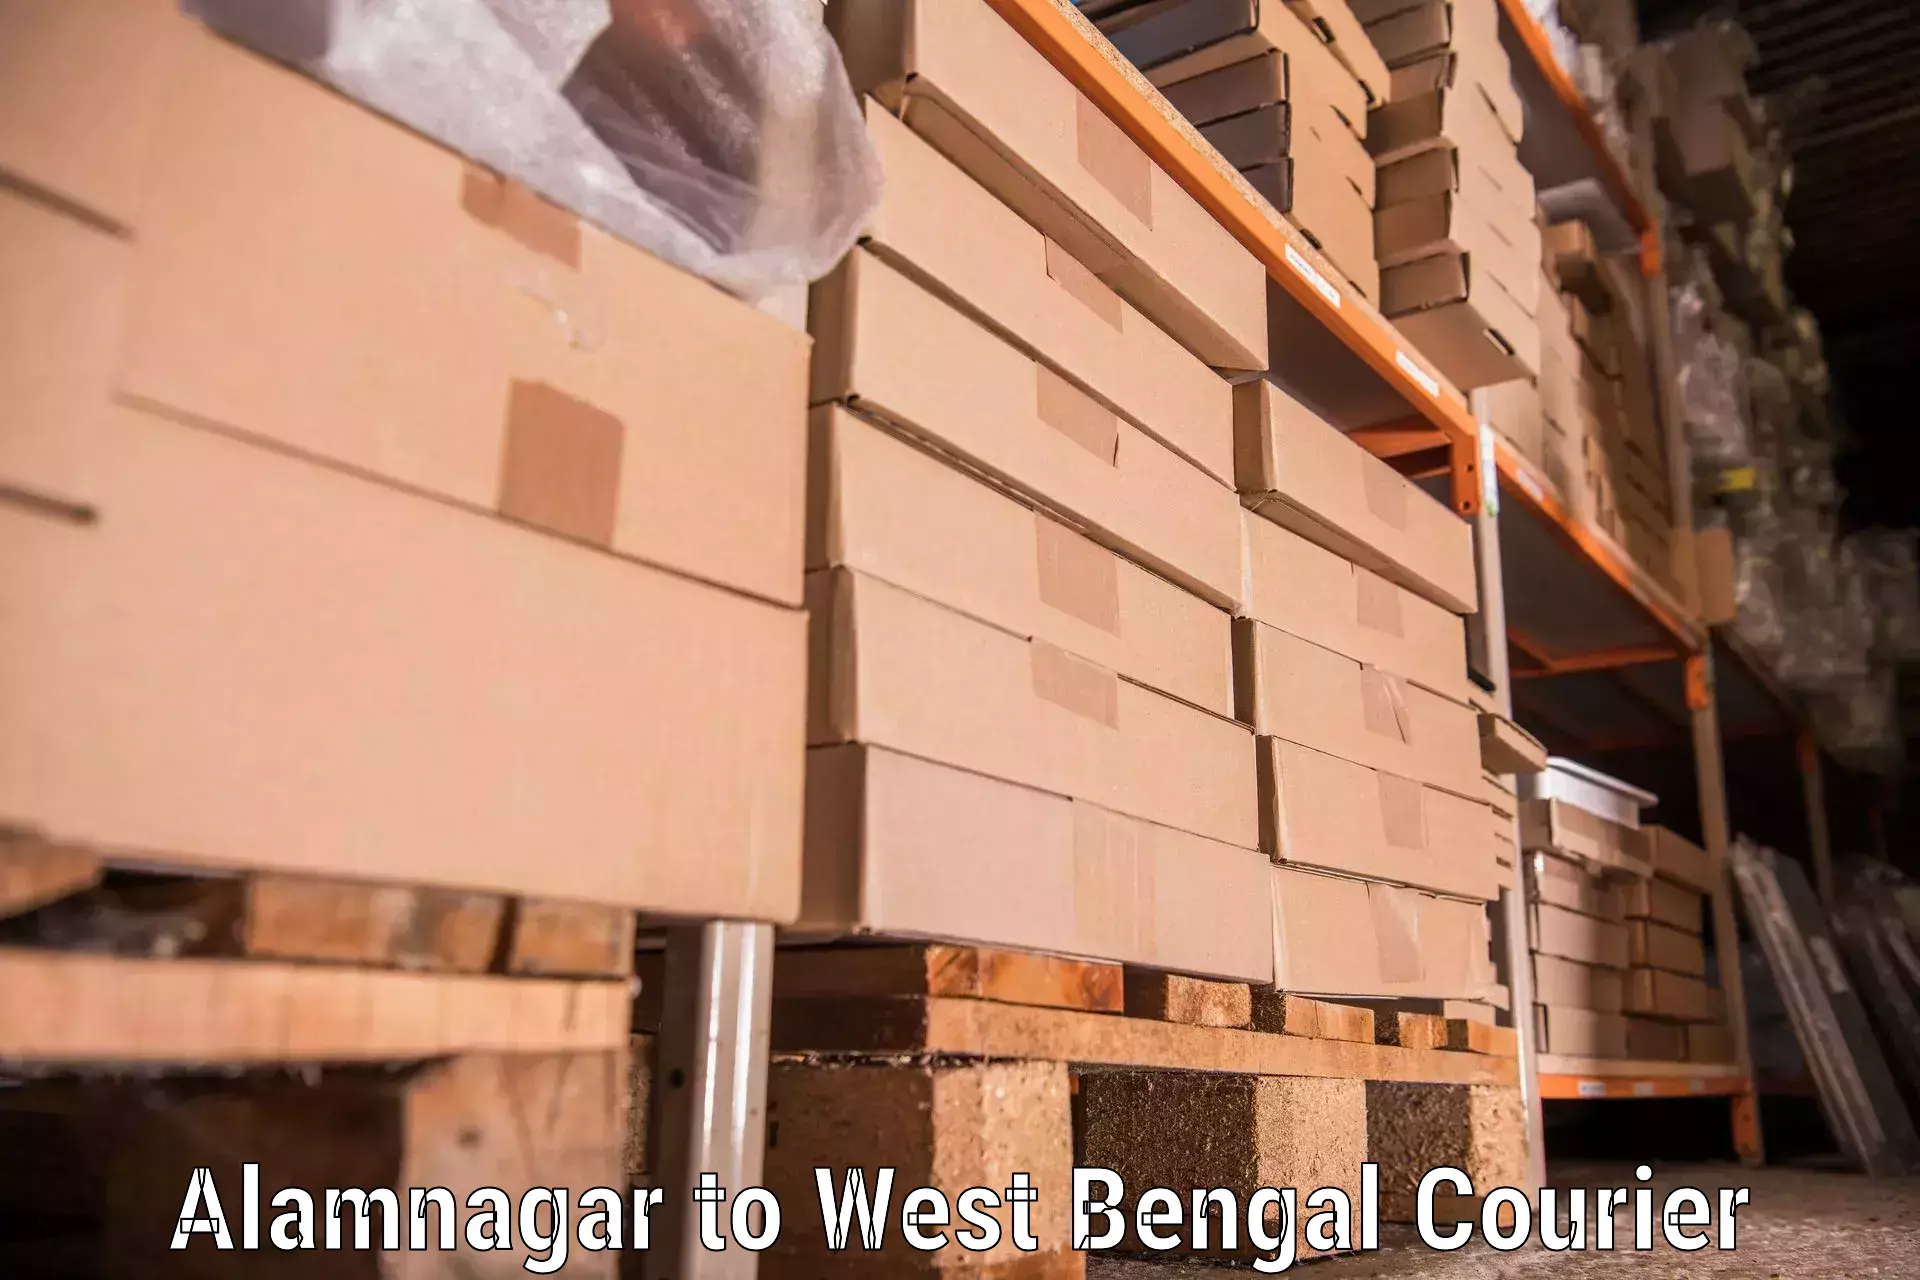 Reliable movers Alamnagar to Kharagpur